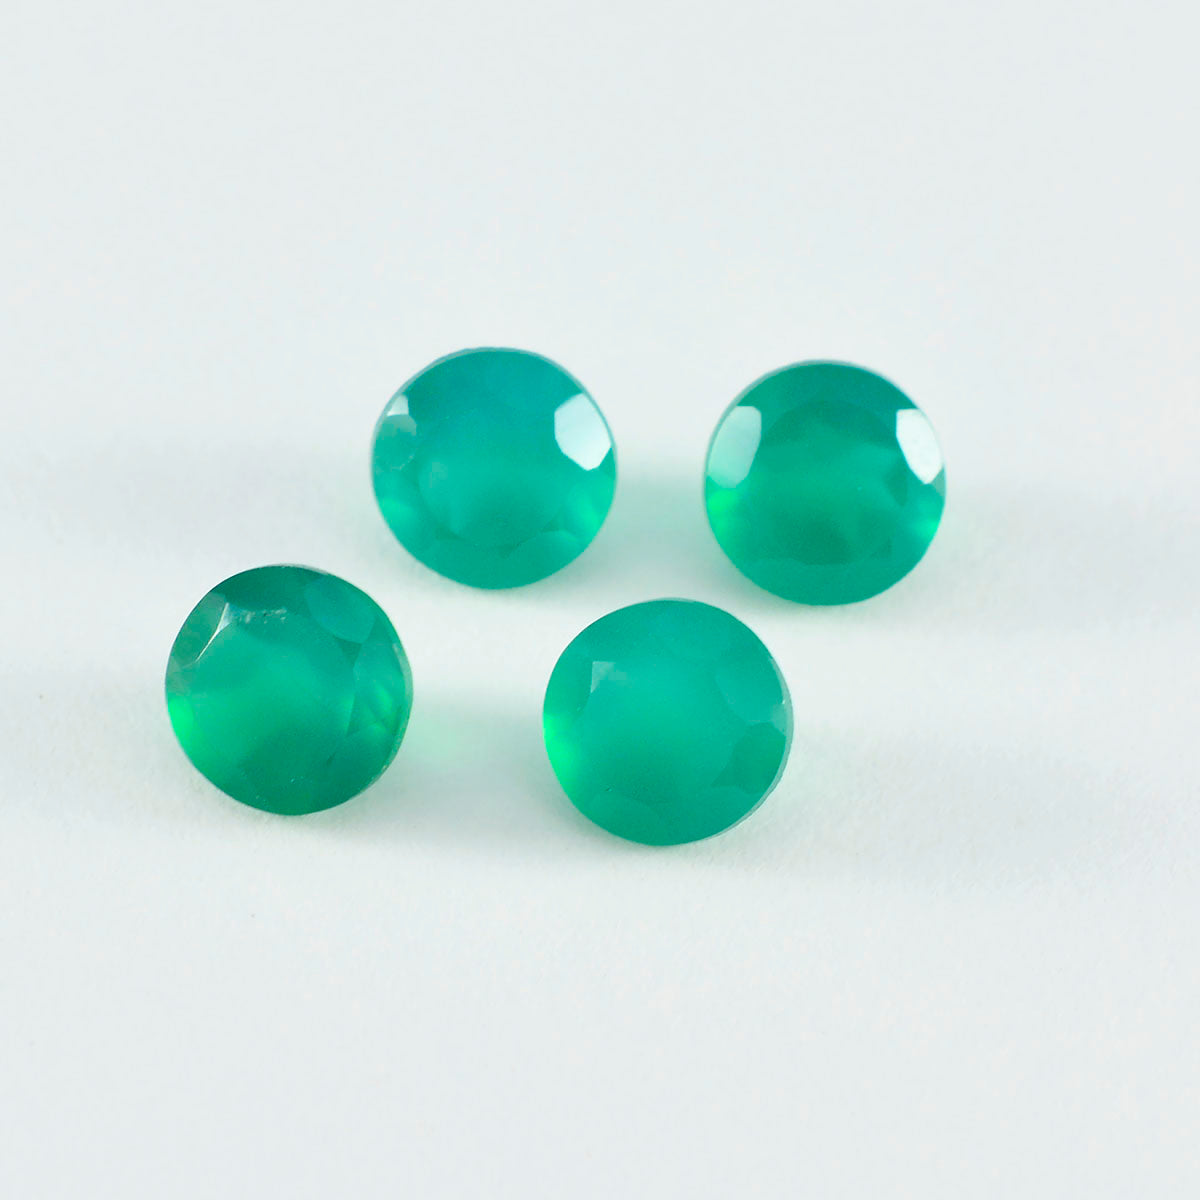 riyogems 1pc リアル グリーン オニキス ファセット 6x6 mm ラウンド形状の良質の宝石